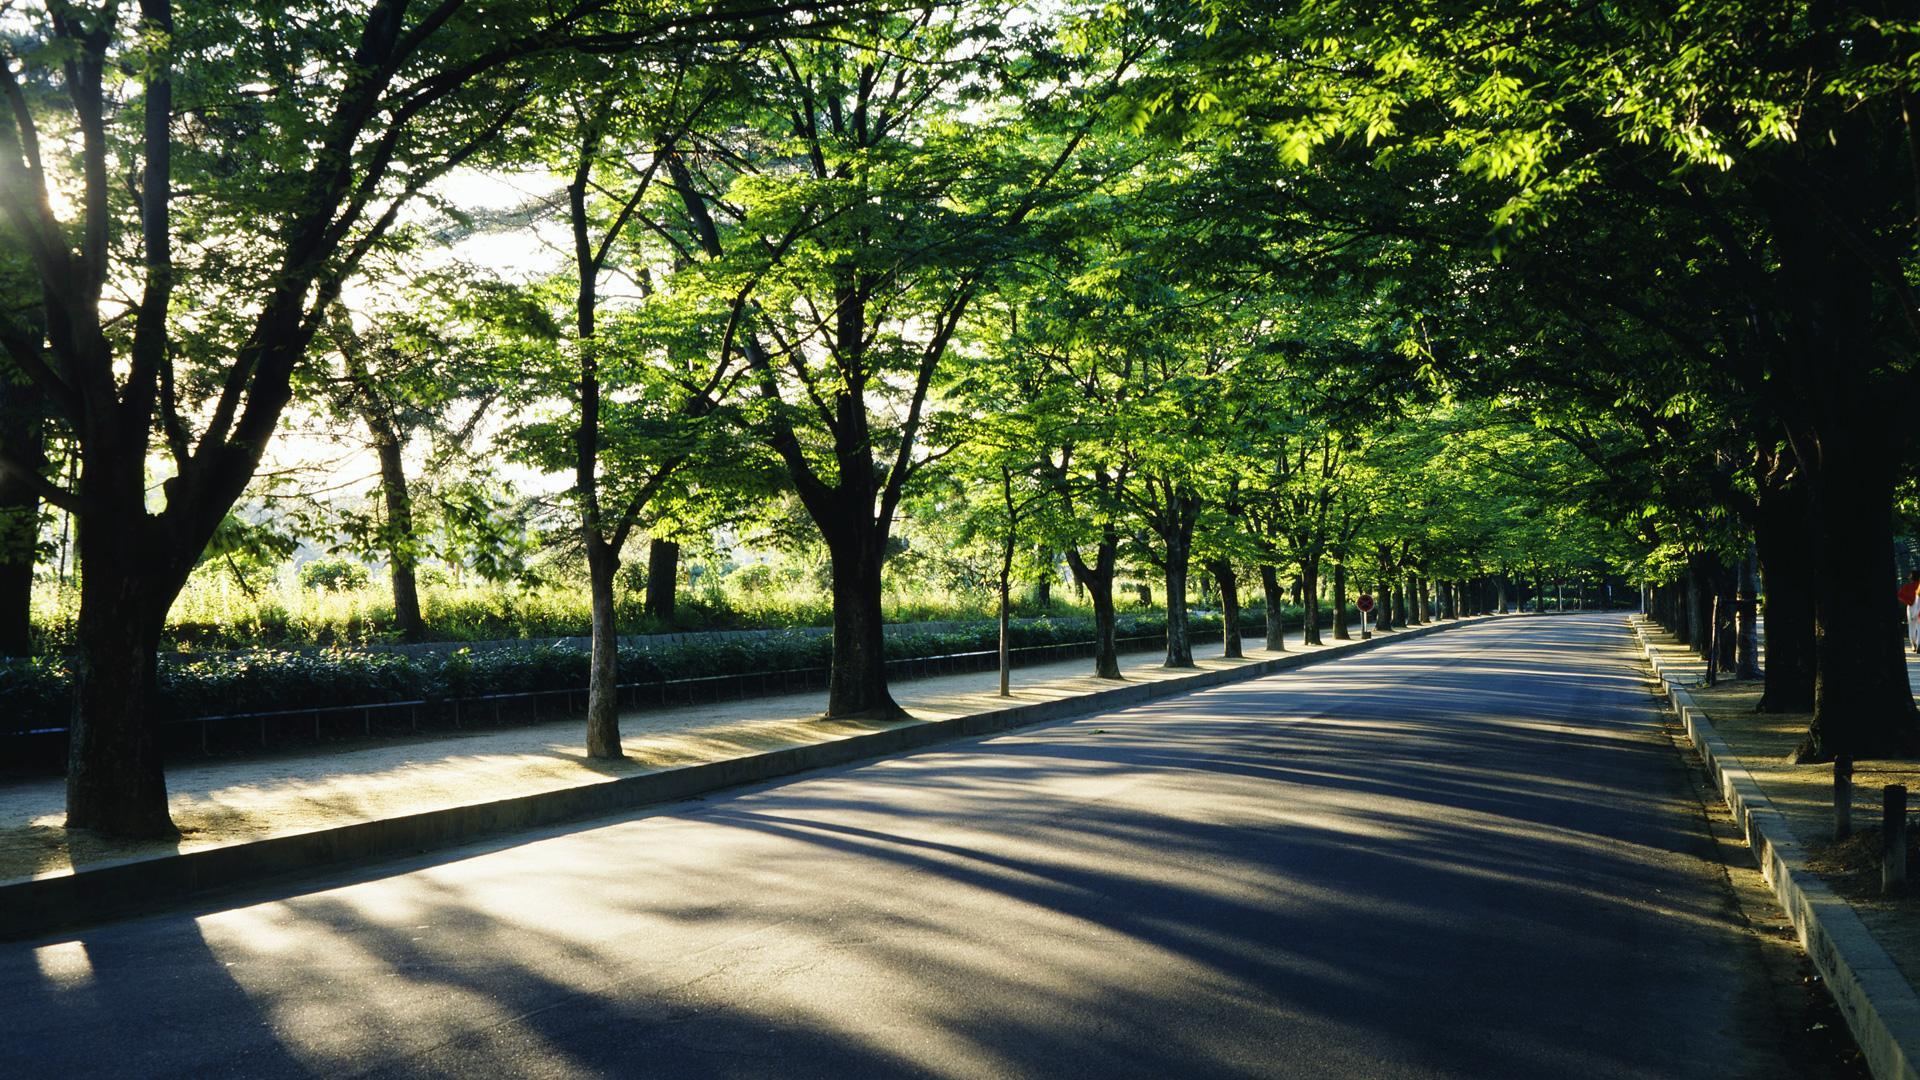 Street trees. Зеленые насаждения в городе. Зеленые насаждения вдоль дорог. Зеленые деревья в городе. Улица зеленая.